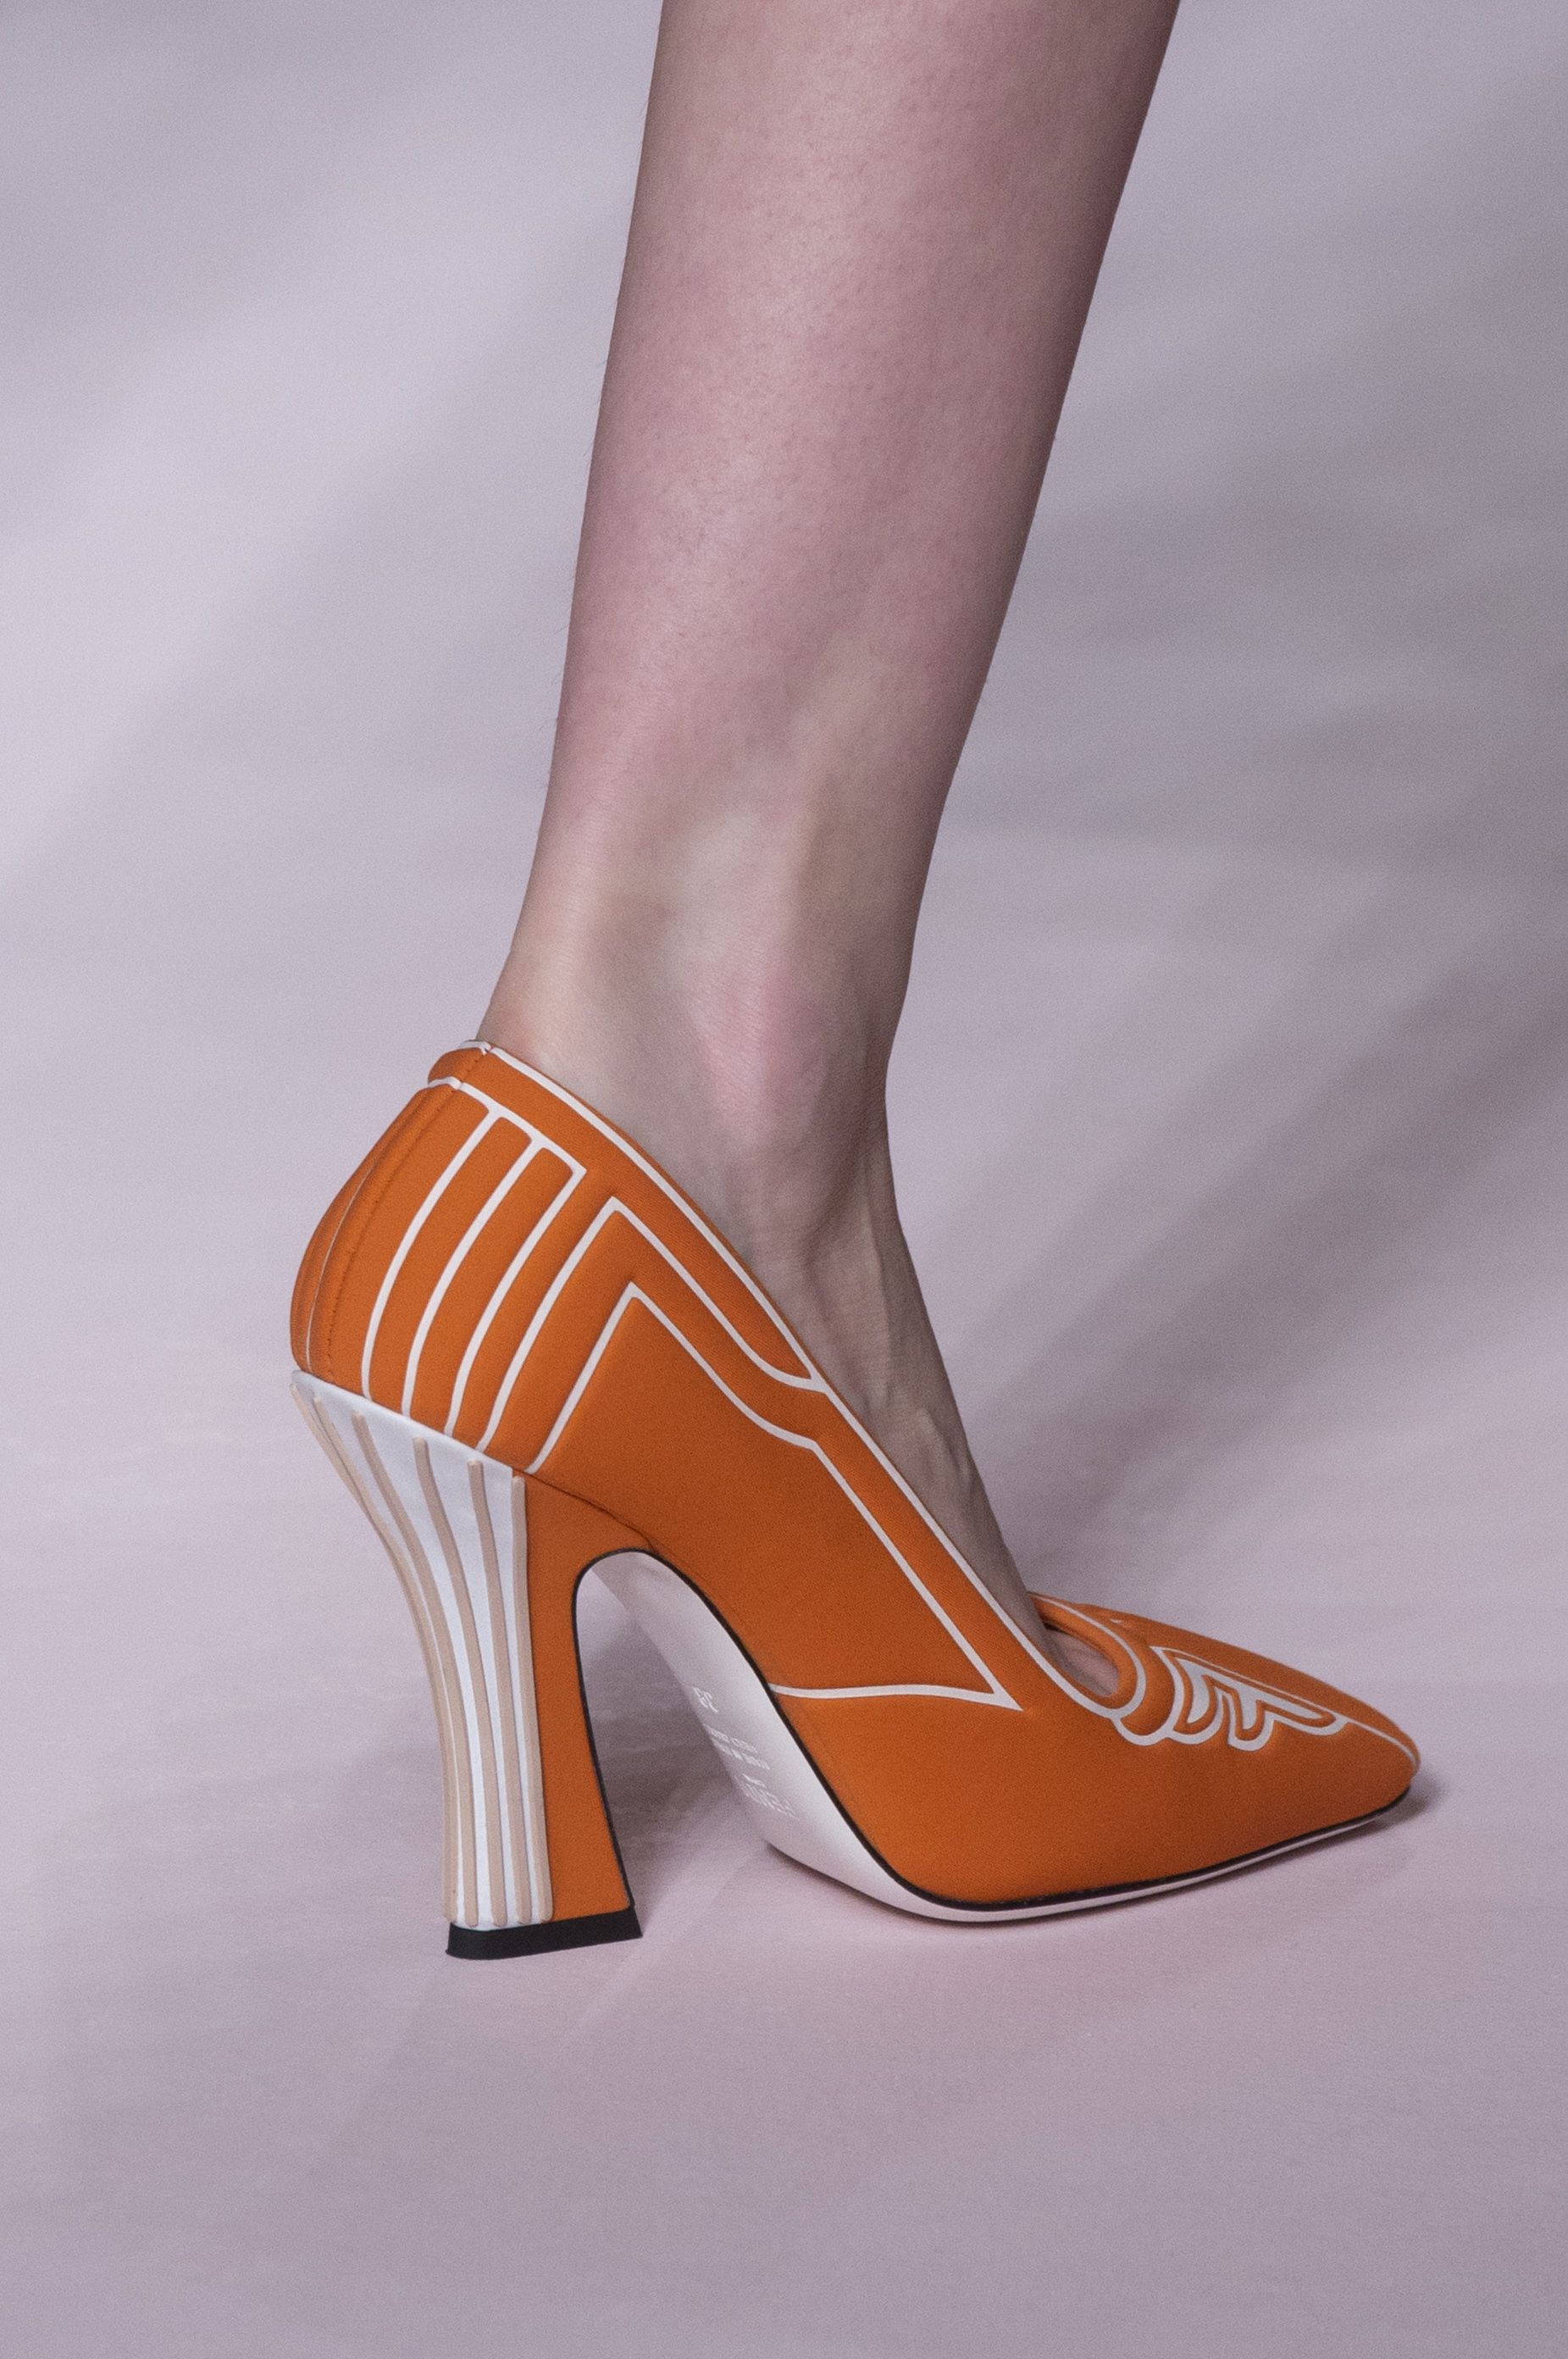 women's shoe trends spring 2019